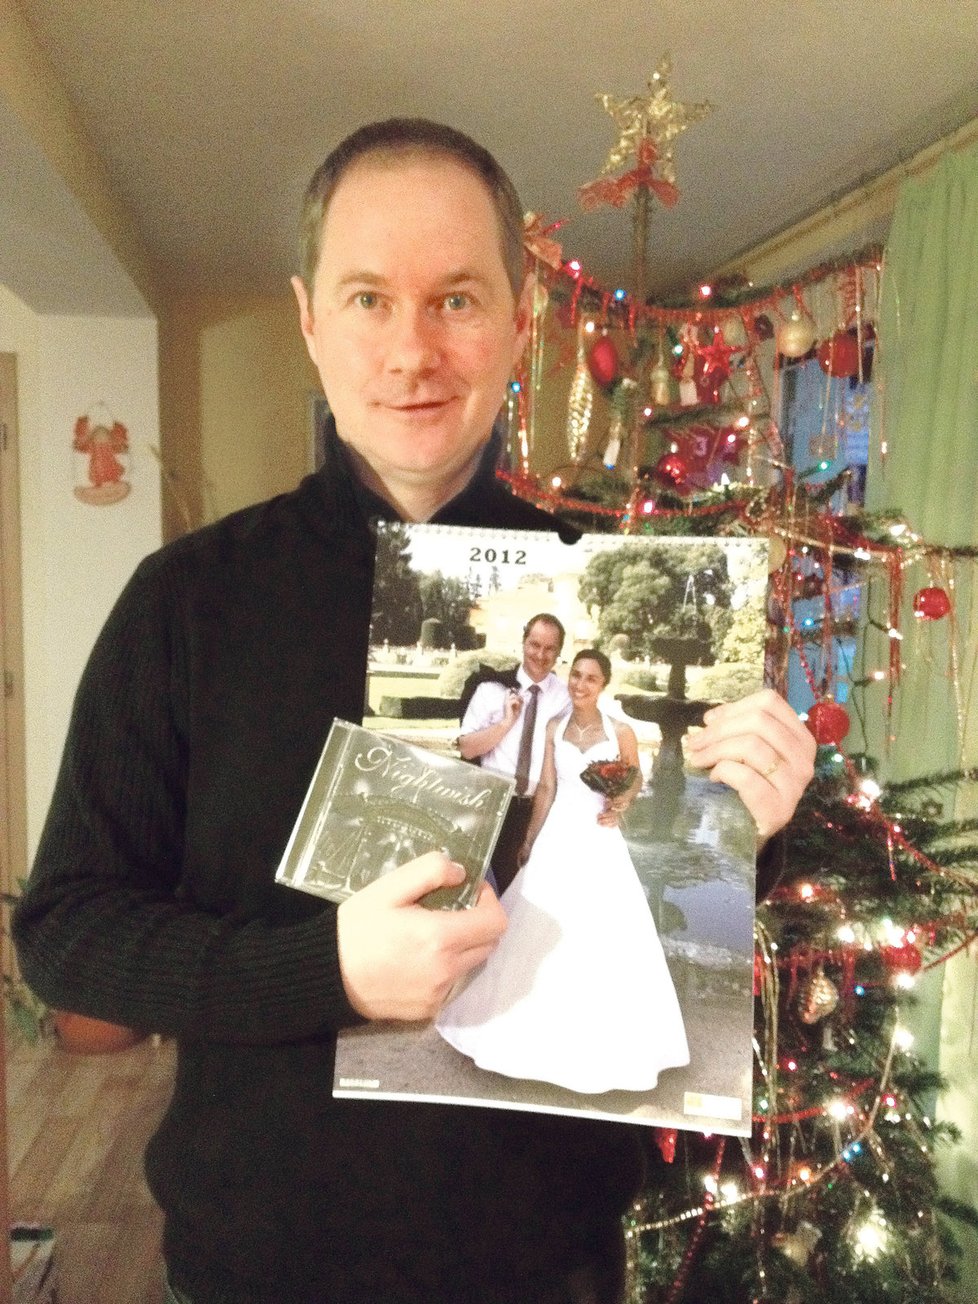 Petr Gazdík o nejlepším dárku: Tak určitě je to cédéčko mé oblíbené finské metalové kapely Nightwish. Taky mě potěšila košile s kravatou a úžasný kalendář z rodinných fotografií.